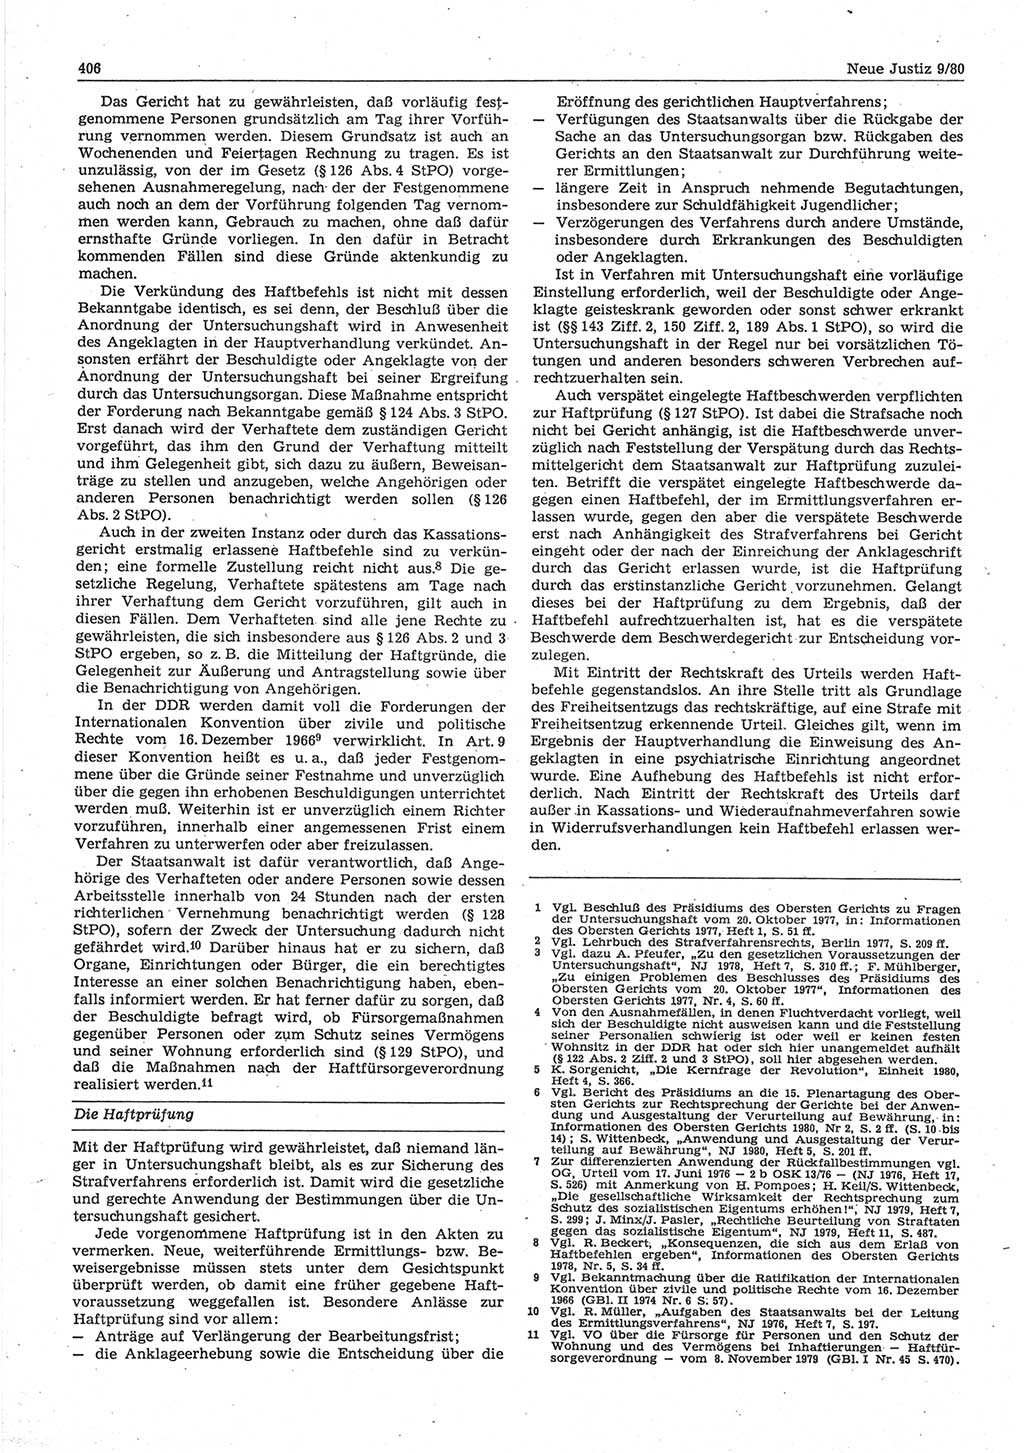 Neue Justiz (NJ), Zeitschrift für sozialistisches Recht und Gesetzlichkeit [Deutsche Demokratische Republik (DDR)], 34. Jahrgang 1980, Seite 406 (NJ DDR 1980, S. 406)